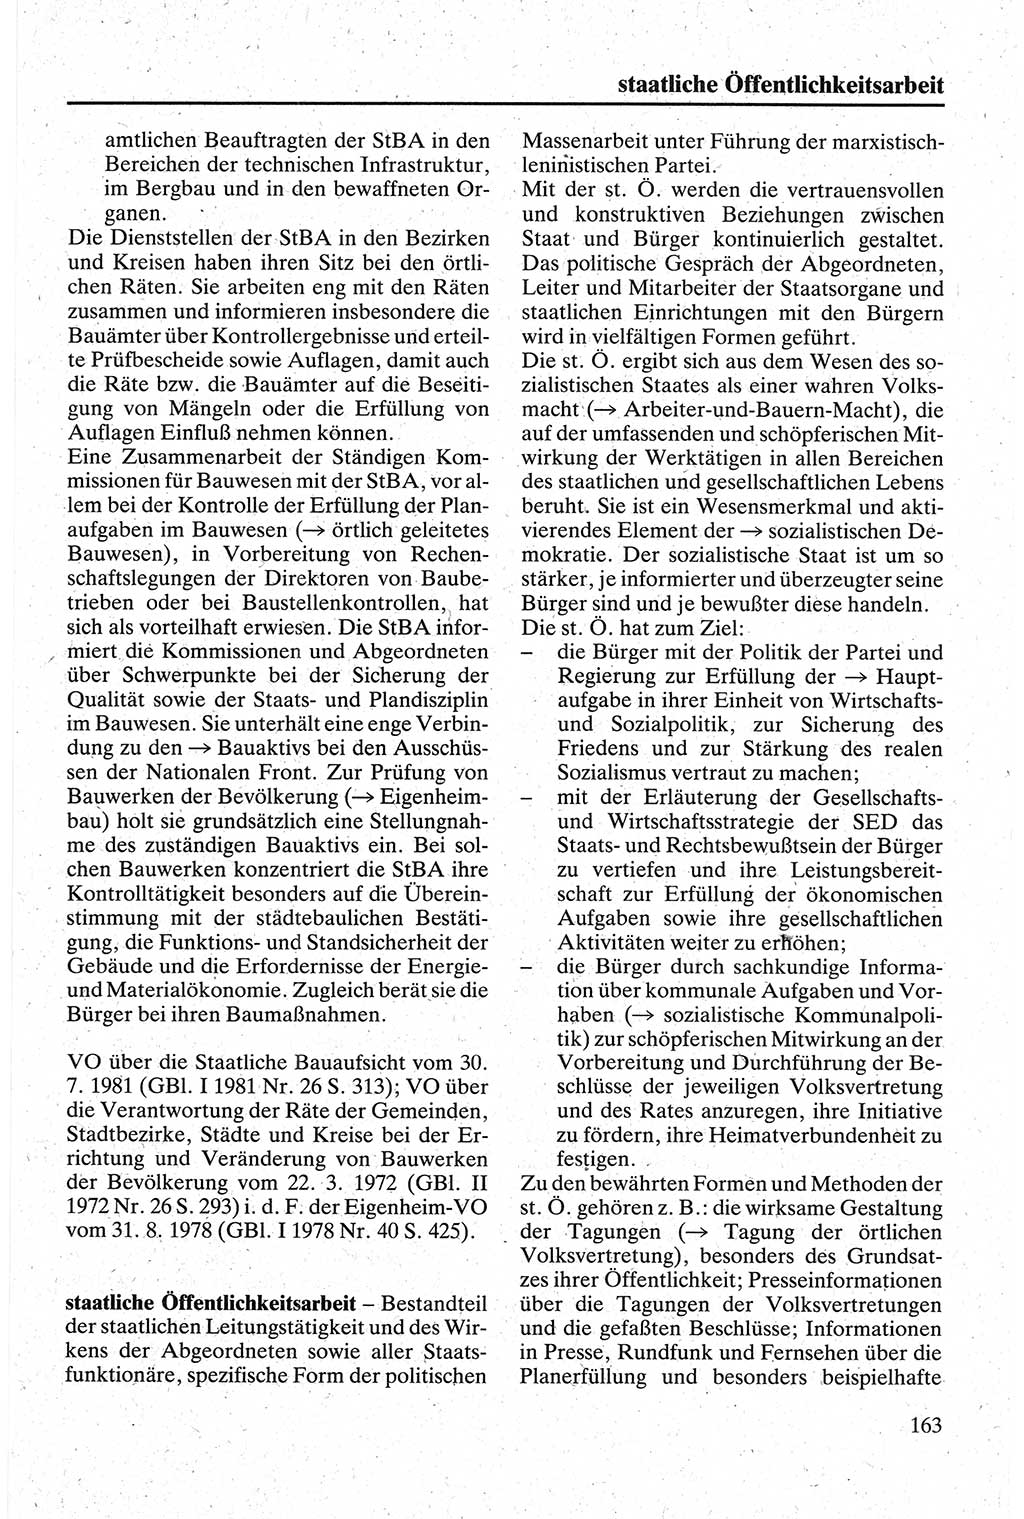 Handbuch für den Abgeordneten [Deutsche Demokratische Republik (DDR)] 1984, Seite 163 (Hb. Abg. DDR 1984, S. 163)